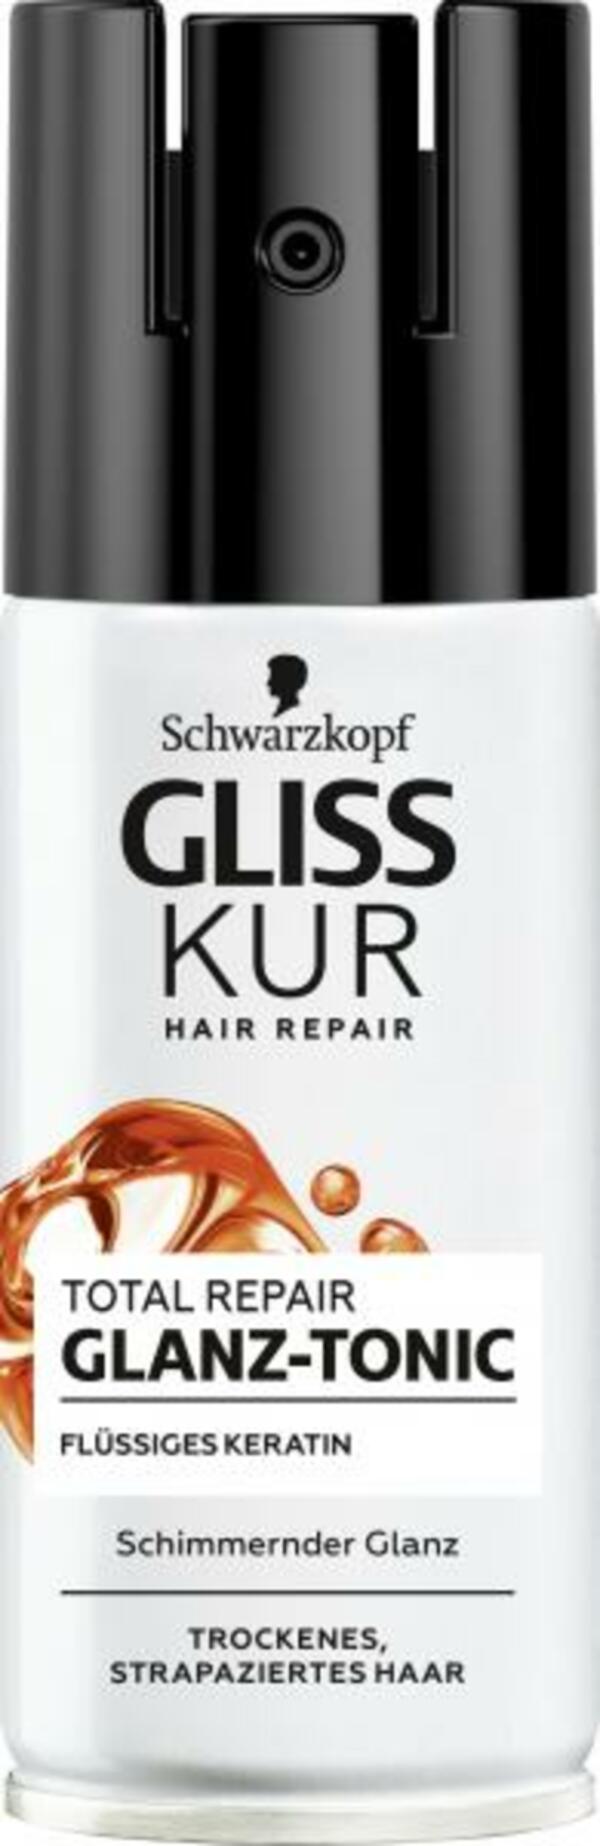 Bild 1 von Schwarzkopf Gliss Kur Glanz Tonic Total Repair